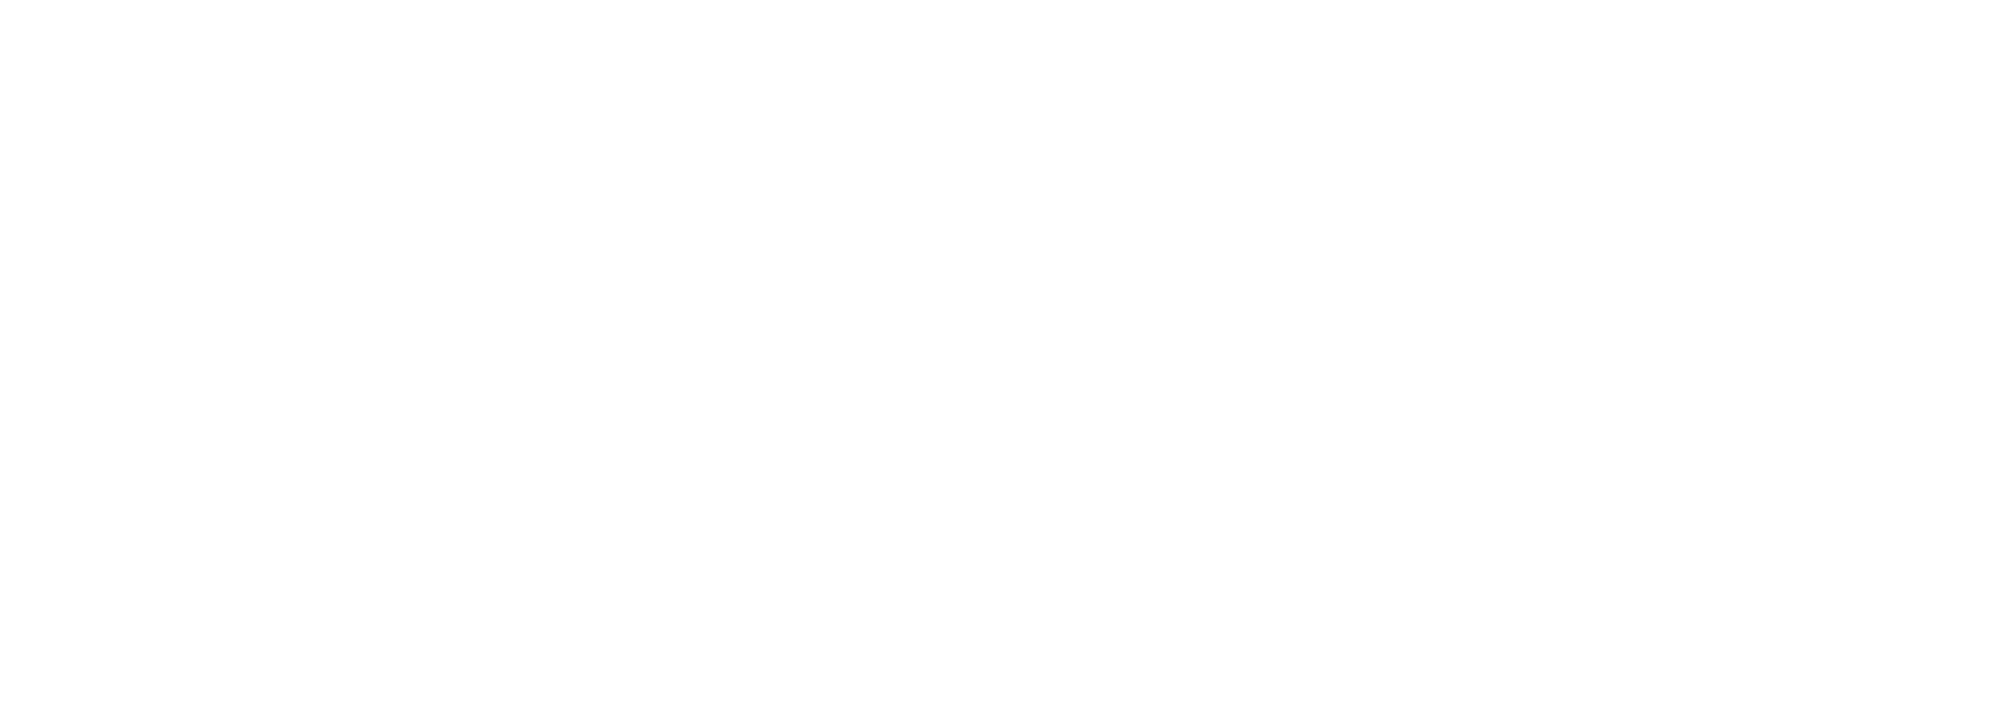 Avanti Italian Kitchen & Wine Bar Tomball